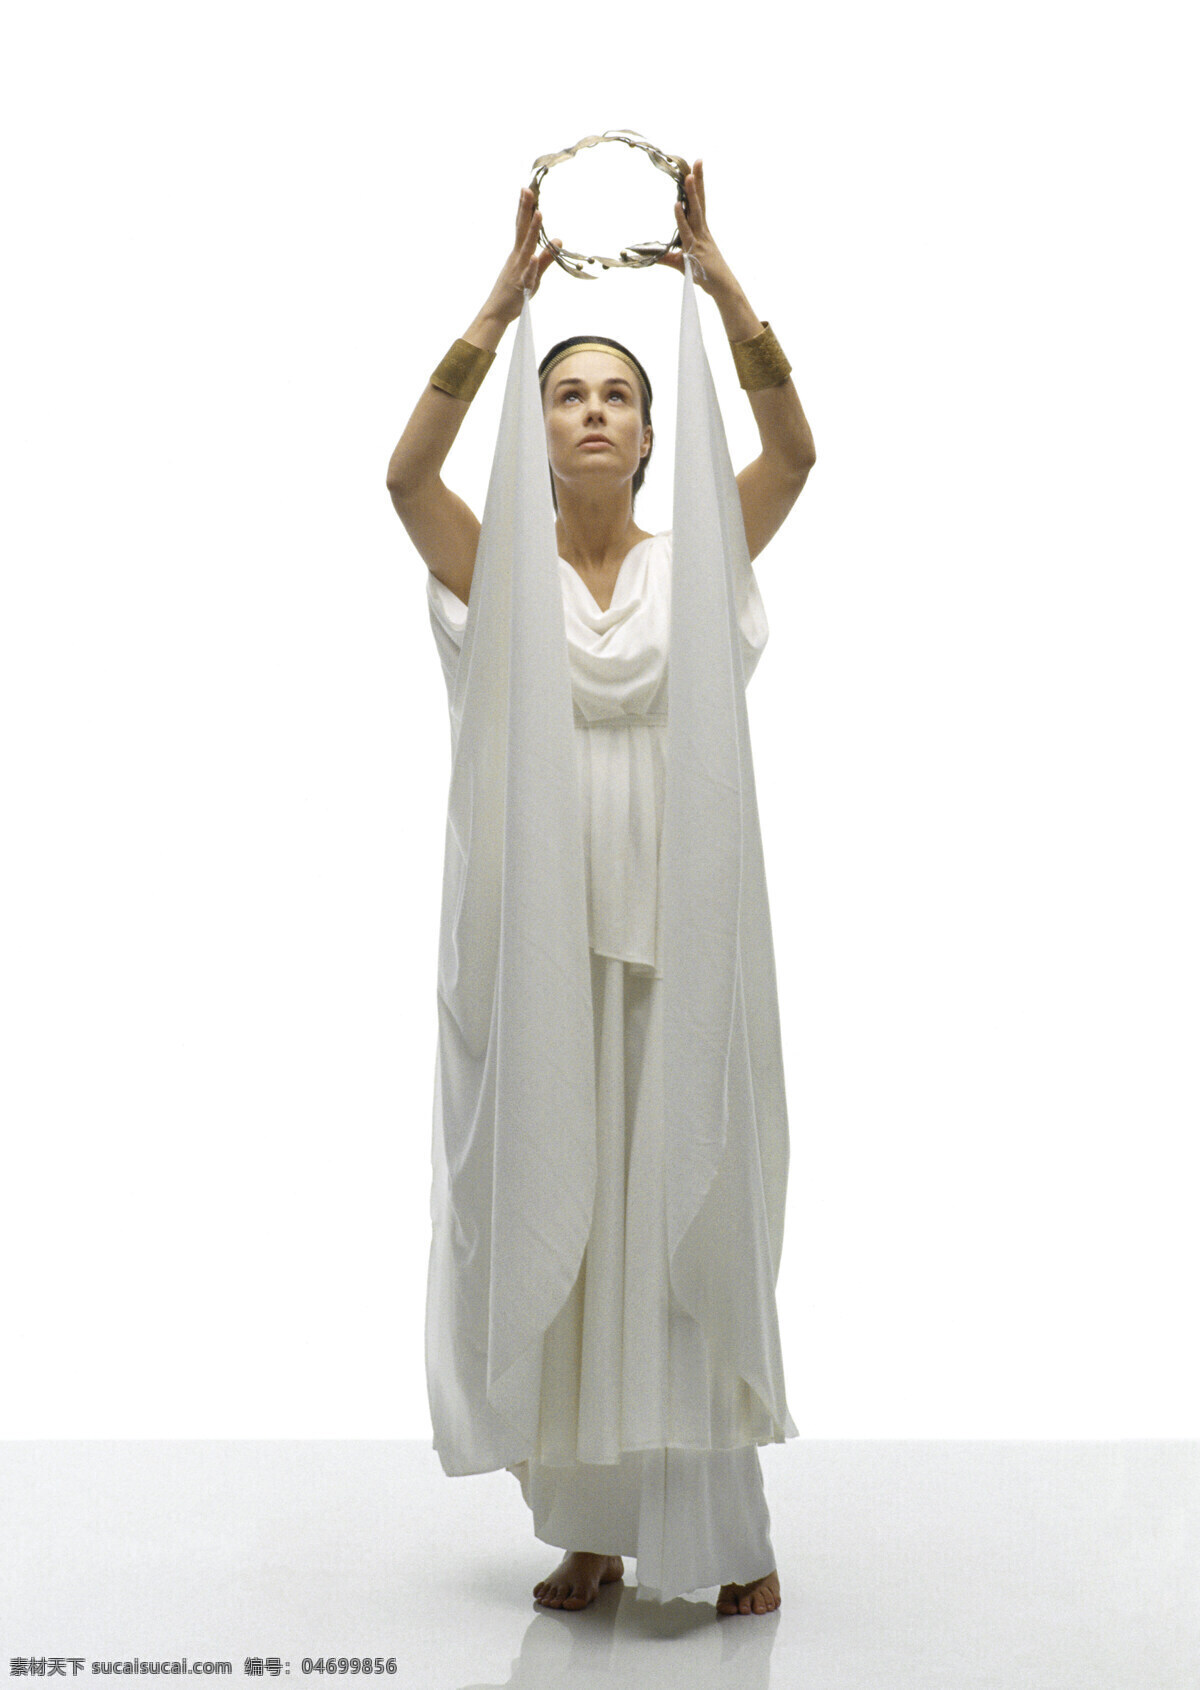 手 花环 女 祭司 古代奥运会 奥林匹克 外国女性 希腊 雅典 女性 神圣 圣洁 白裙 摄影图 高清图片 体育运动 生活百科